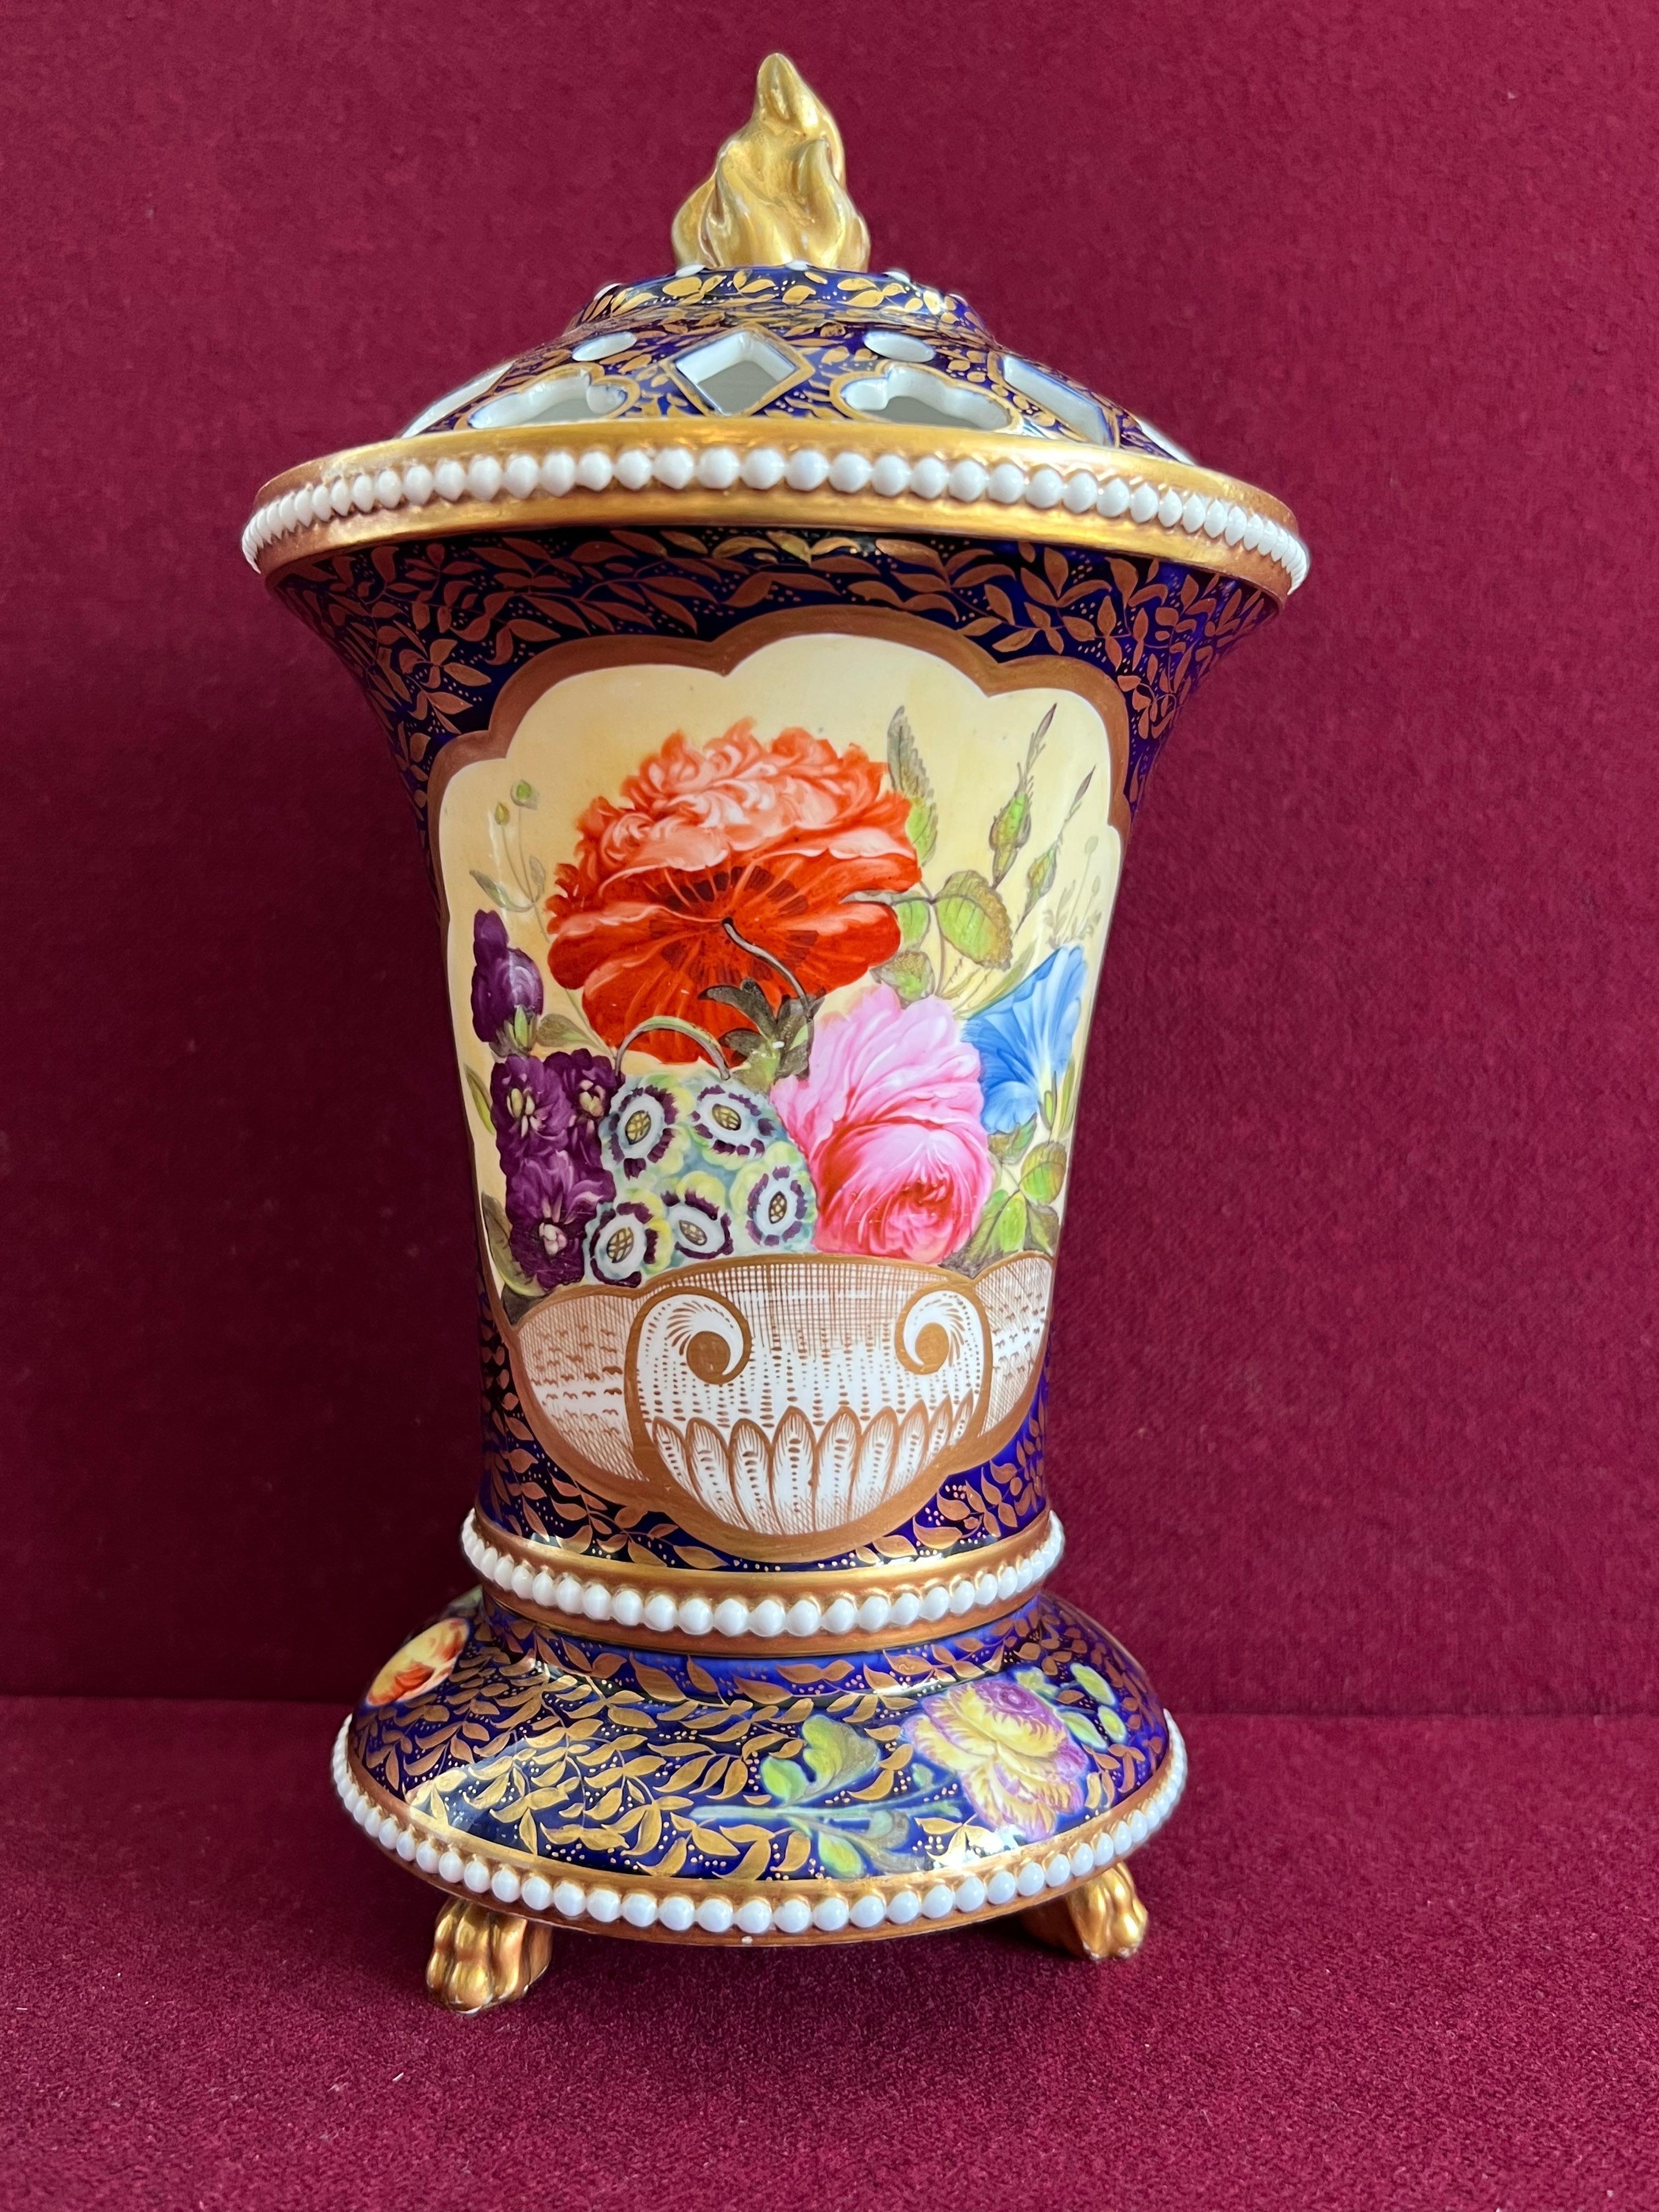 Un vase Pot Pourri en porcelaine Spode avec des perles vers 1820-1825. En forme de trompette évasée, estampée de trois bandes de perles, reposant sur trois pieds pattes dorés, le couvercle percé avec un fleuron flamiforme. Richement décoré selon le